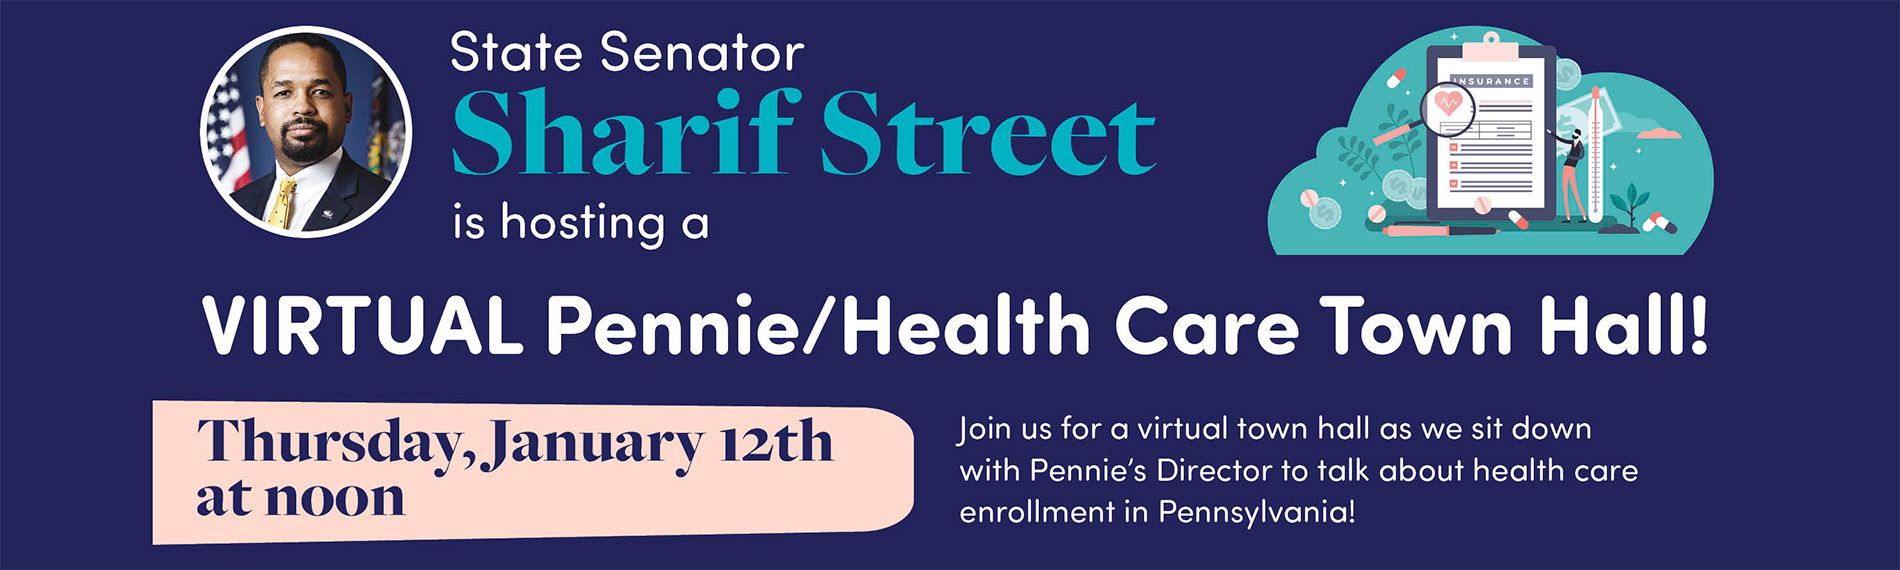 Virtual Pennie/Health Care Town Hall